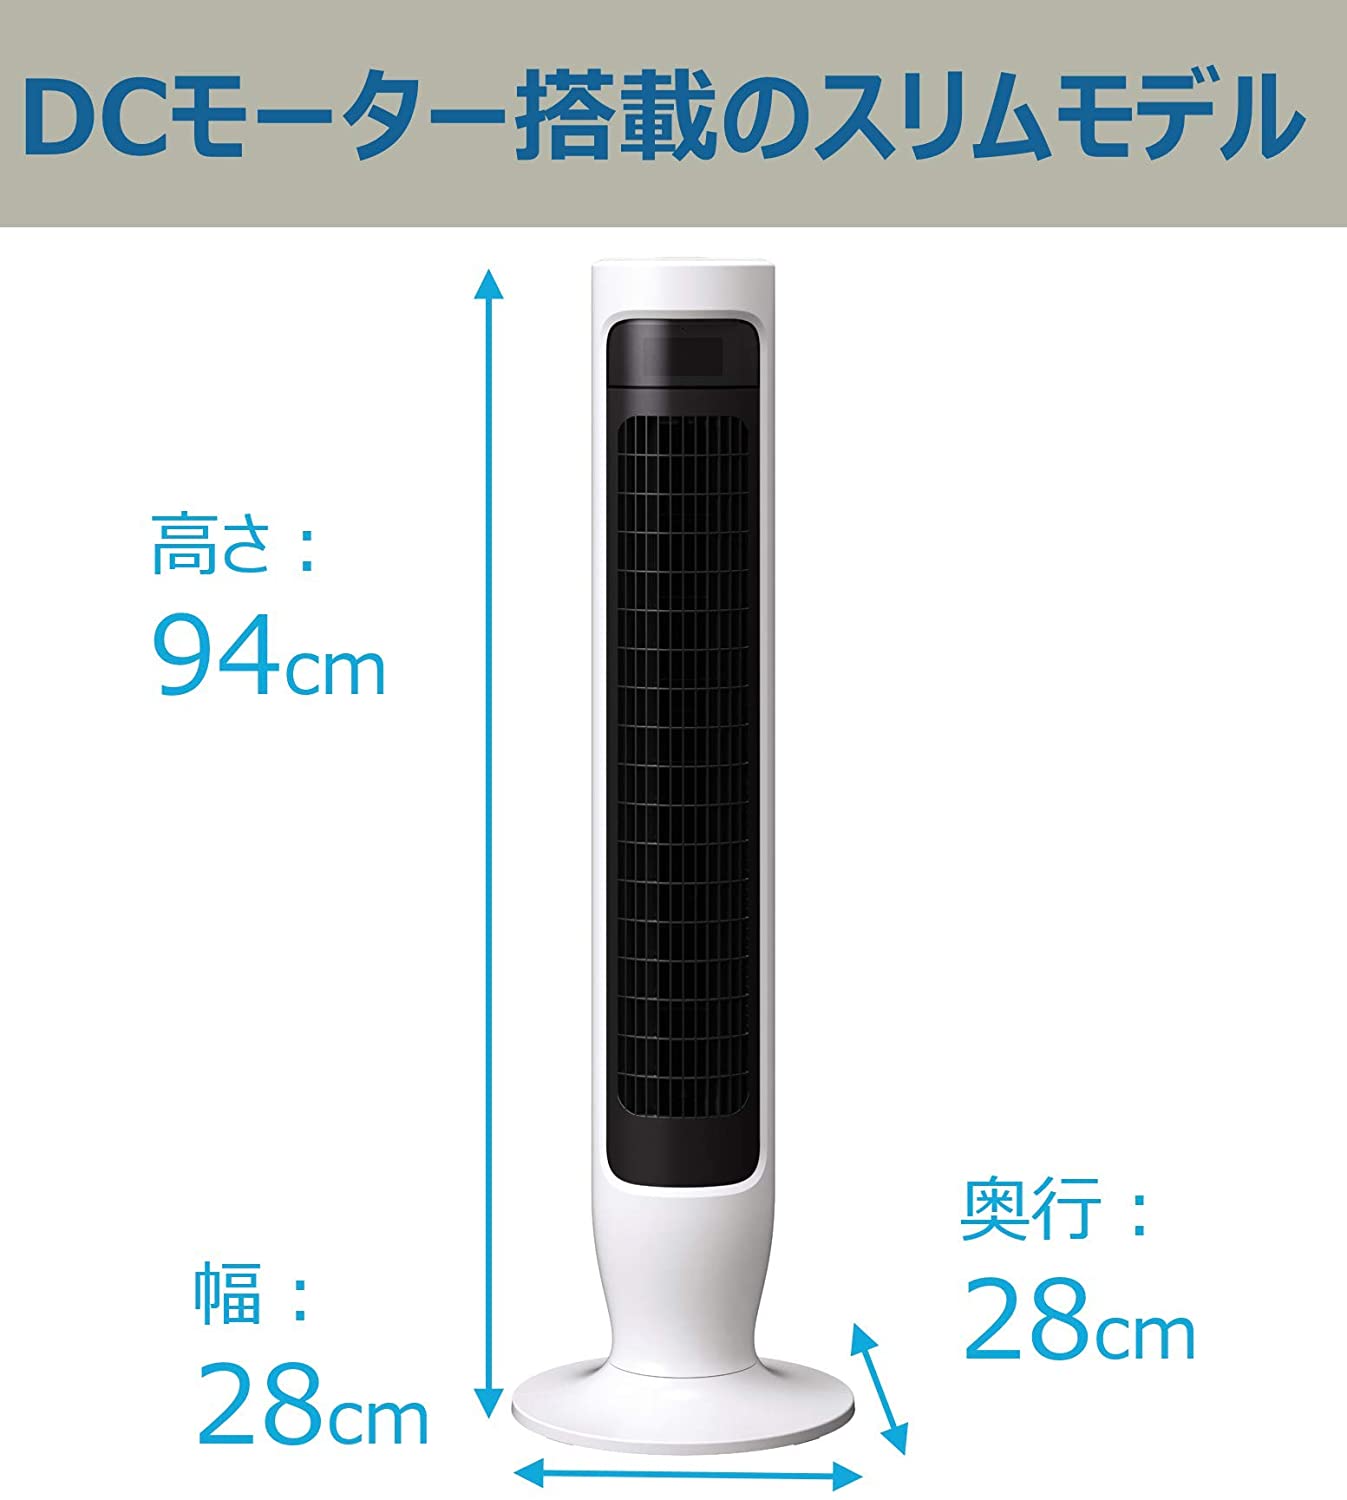 【日立(HITACHI)】タワーファンスリム DCモーター リモコン付き